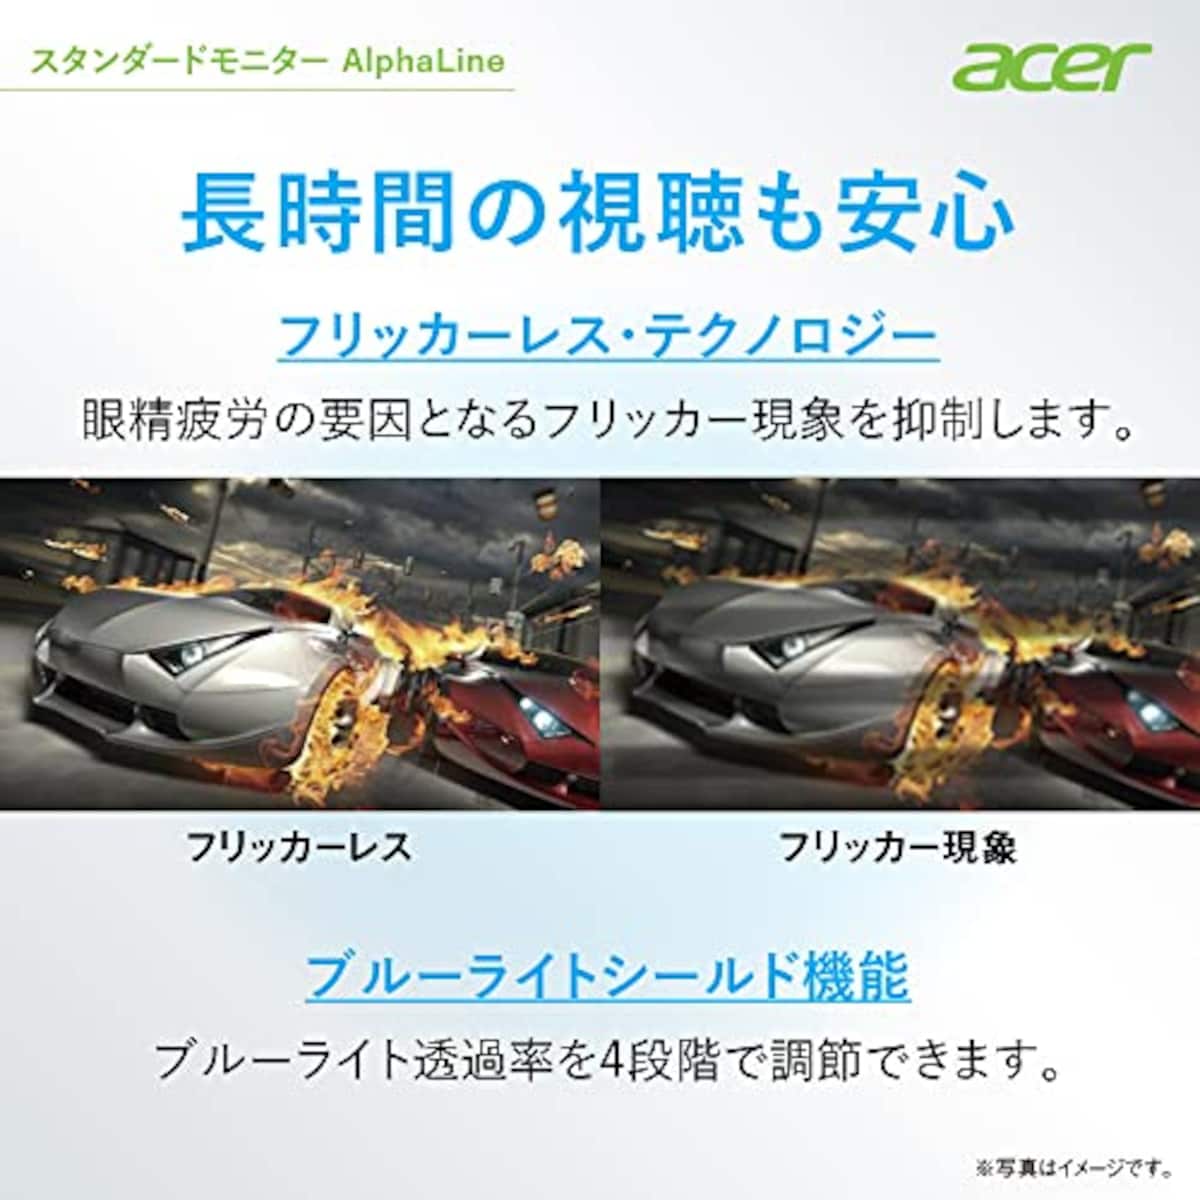  Acer モニター AlphaLine CBA242YAbmirx 23.8インチ VA 非光沢 フルHD 75Hz/1ms (VRB)HDMI ミニD-Sub 15 VESAマウント対応 スピーカー内蔵 高さ調整 チルト スイベル ピボッド機能 広い視野角178° フリッカーレス ブルーライト軽減 フレームレスデザイン画像6 